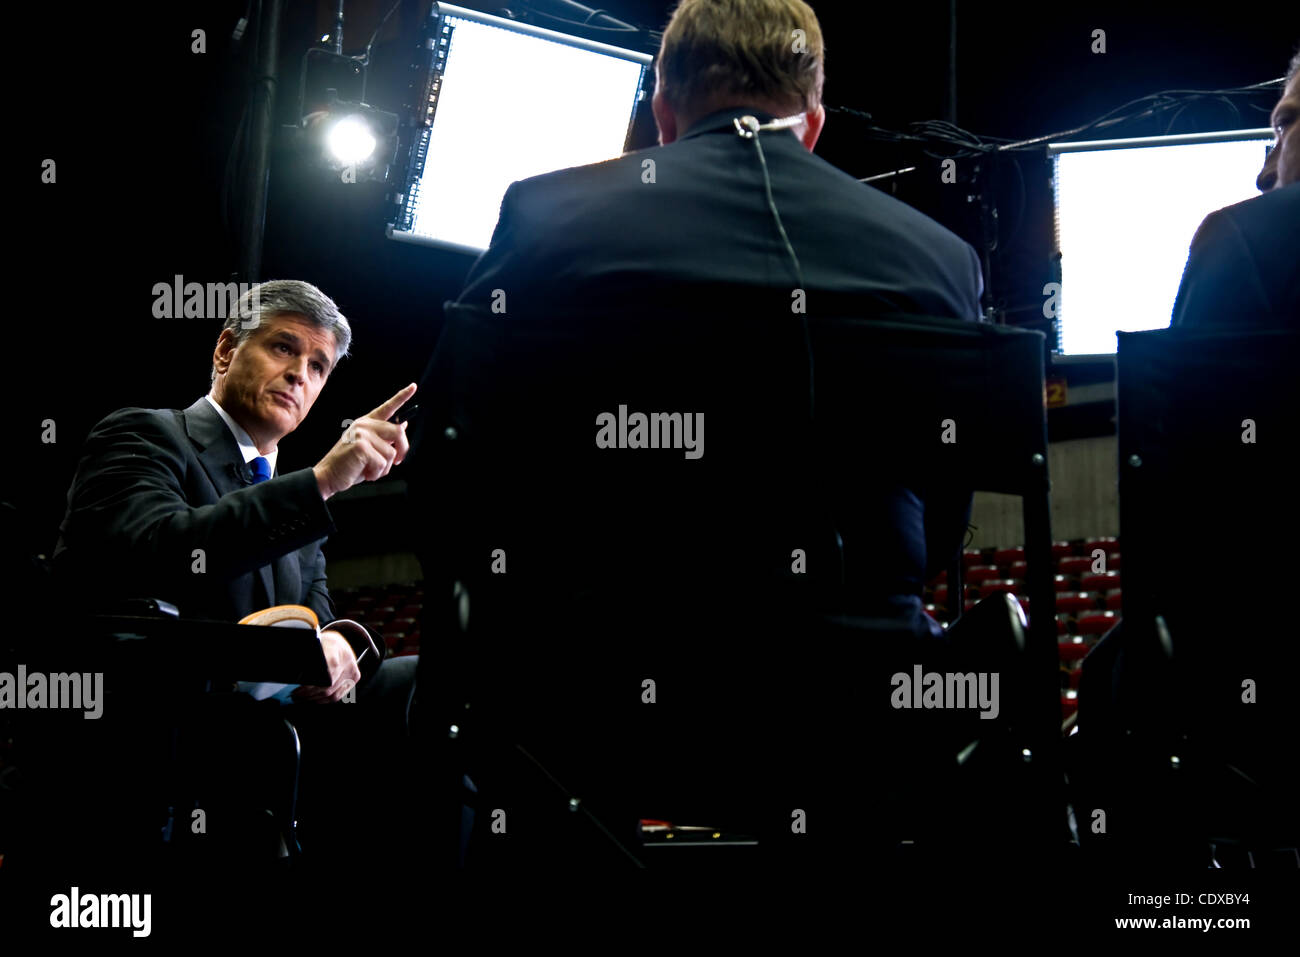 Le 11 août 2011 - Ames, Iowa, USA - Sean Hannity héberge son émission de télévision Fox News à partir de l'après-débat républicain chambre spin sur le campus de l'Université d'Iowa. Banque D'Images